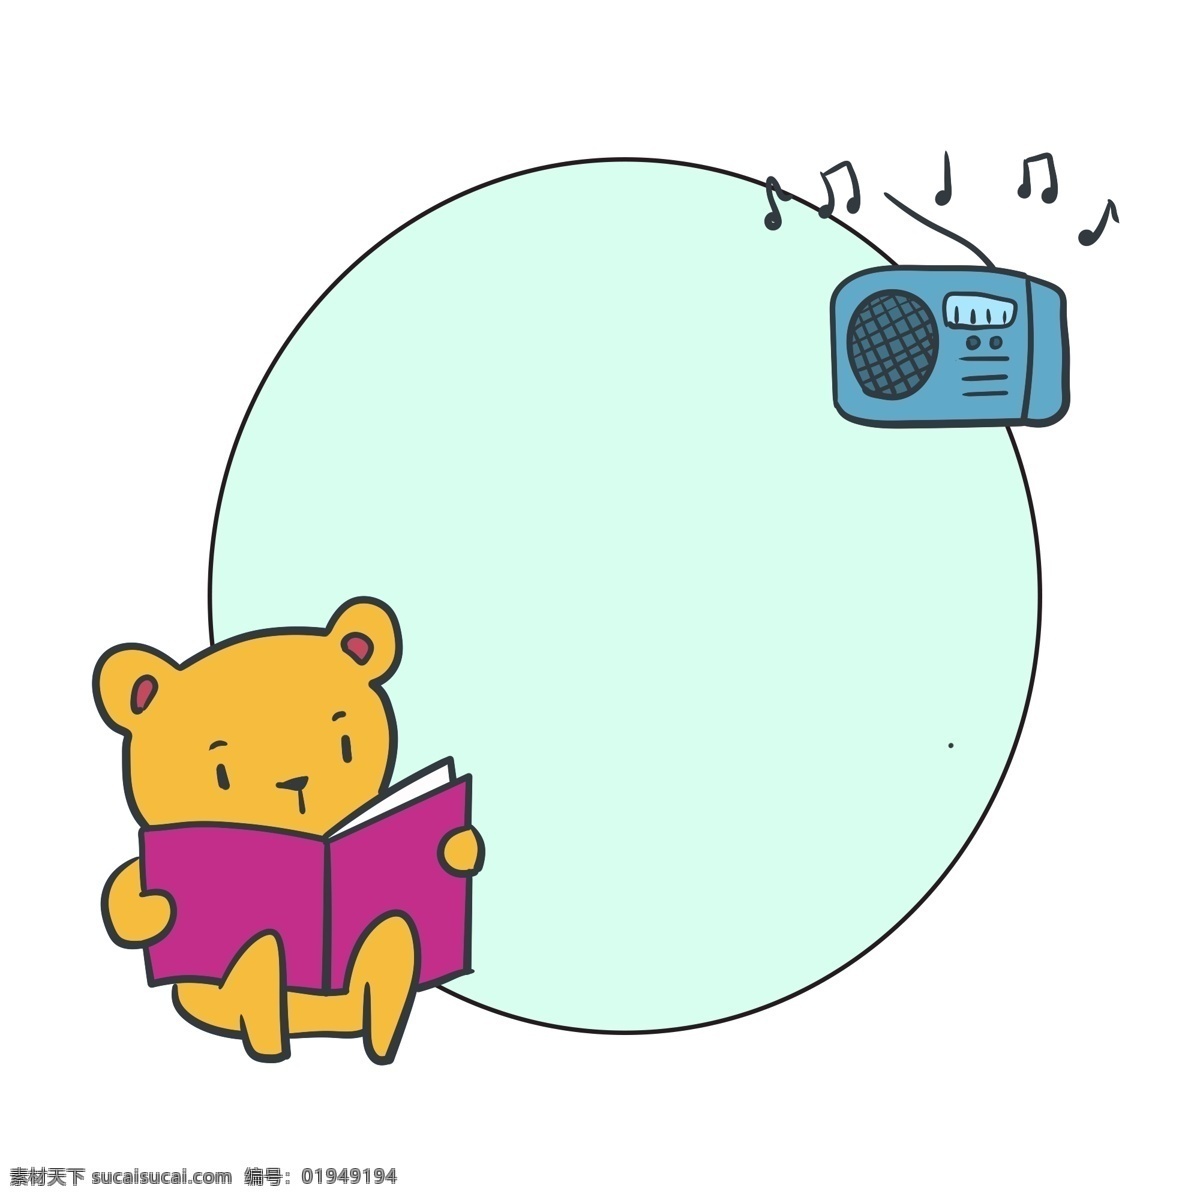 可爱 小 熊 看书 边框 黄色的小熊 小熊边框 卡通边框 收音机边框 边框装饰 浅绿色边框 看书的小熊